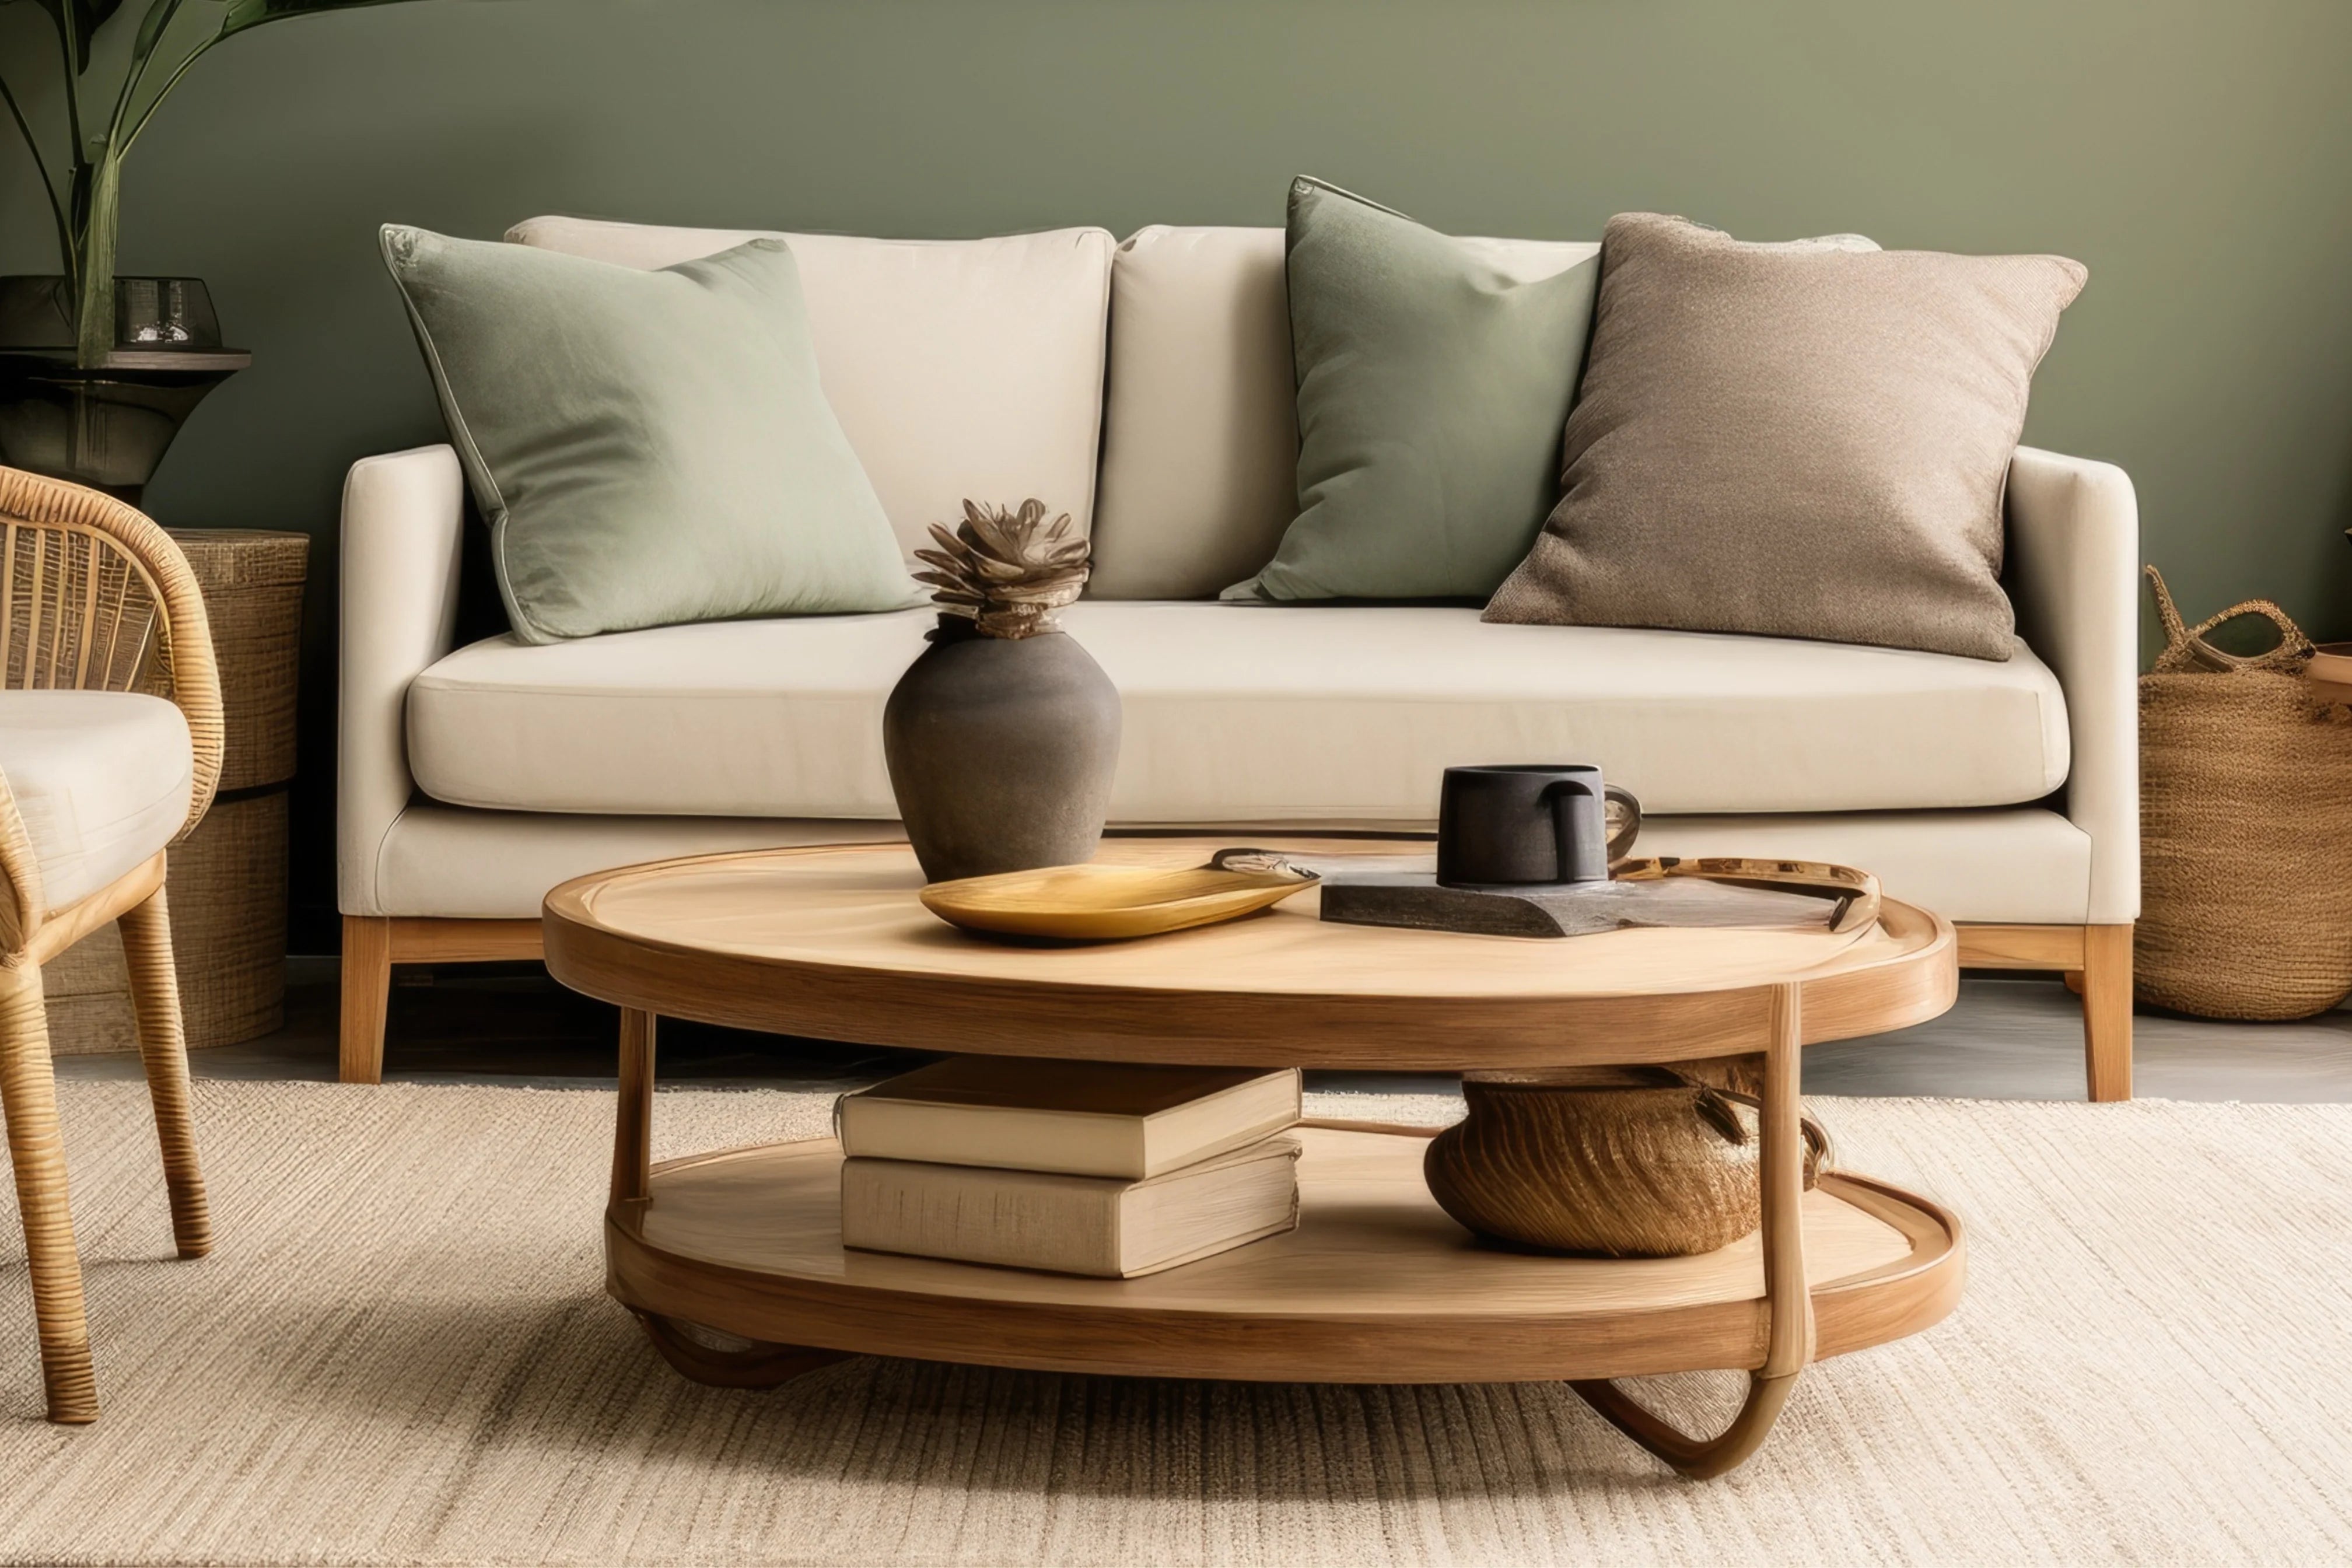 Cuscini arredo: eleganti e moderni decorativi per divani e poltrone